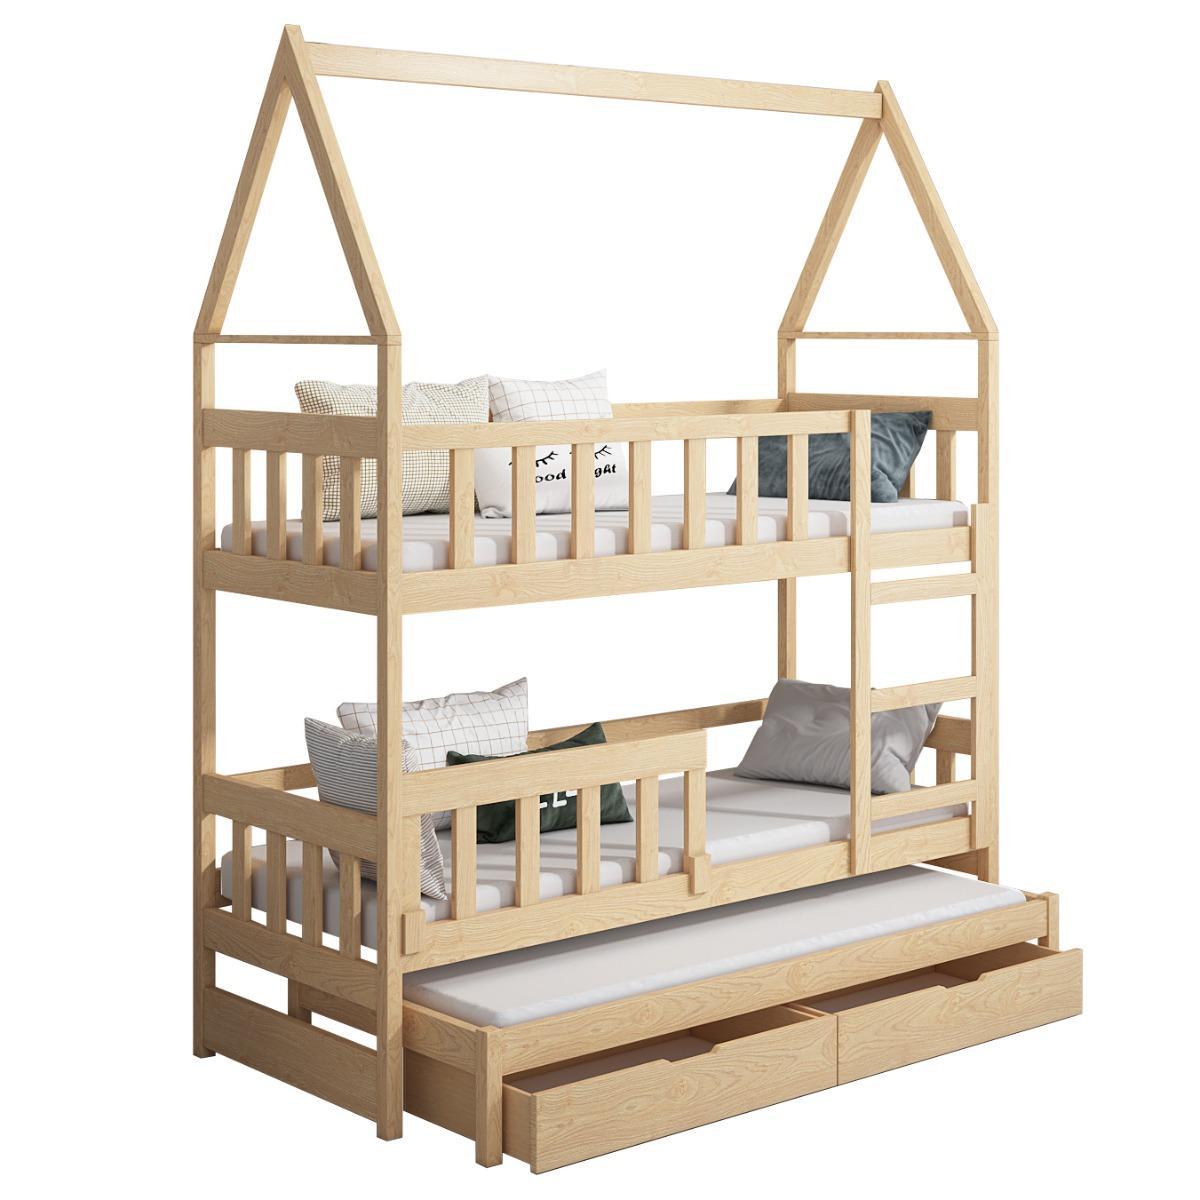 Łóżko piętrowe DOMEK drewno naturalne miejsce do spania dla 3 osób + materace piankowe 180x75 cm + barierka dolna do pokoju dziecka 5 Full Screen